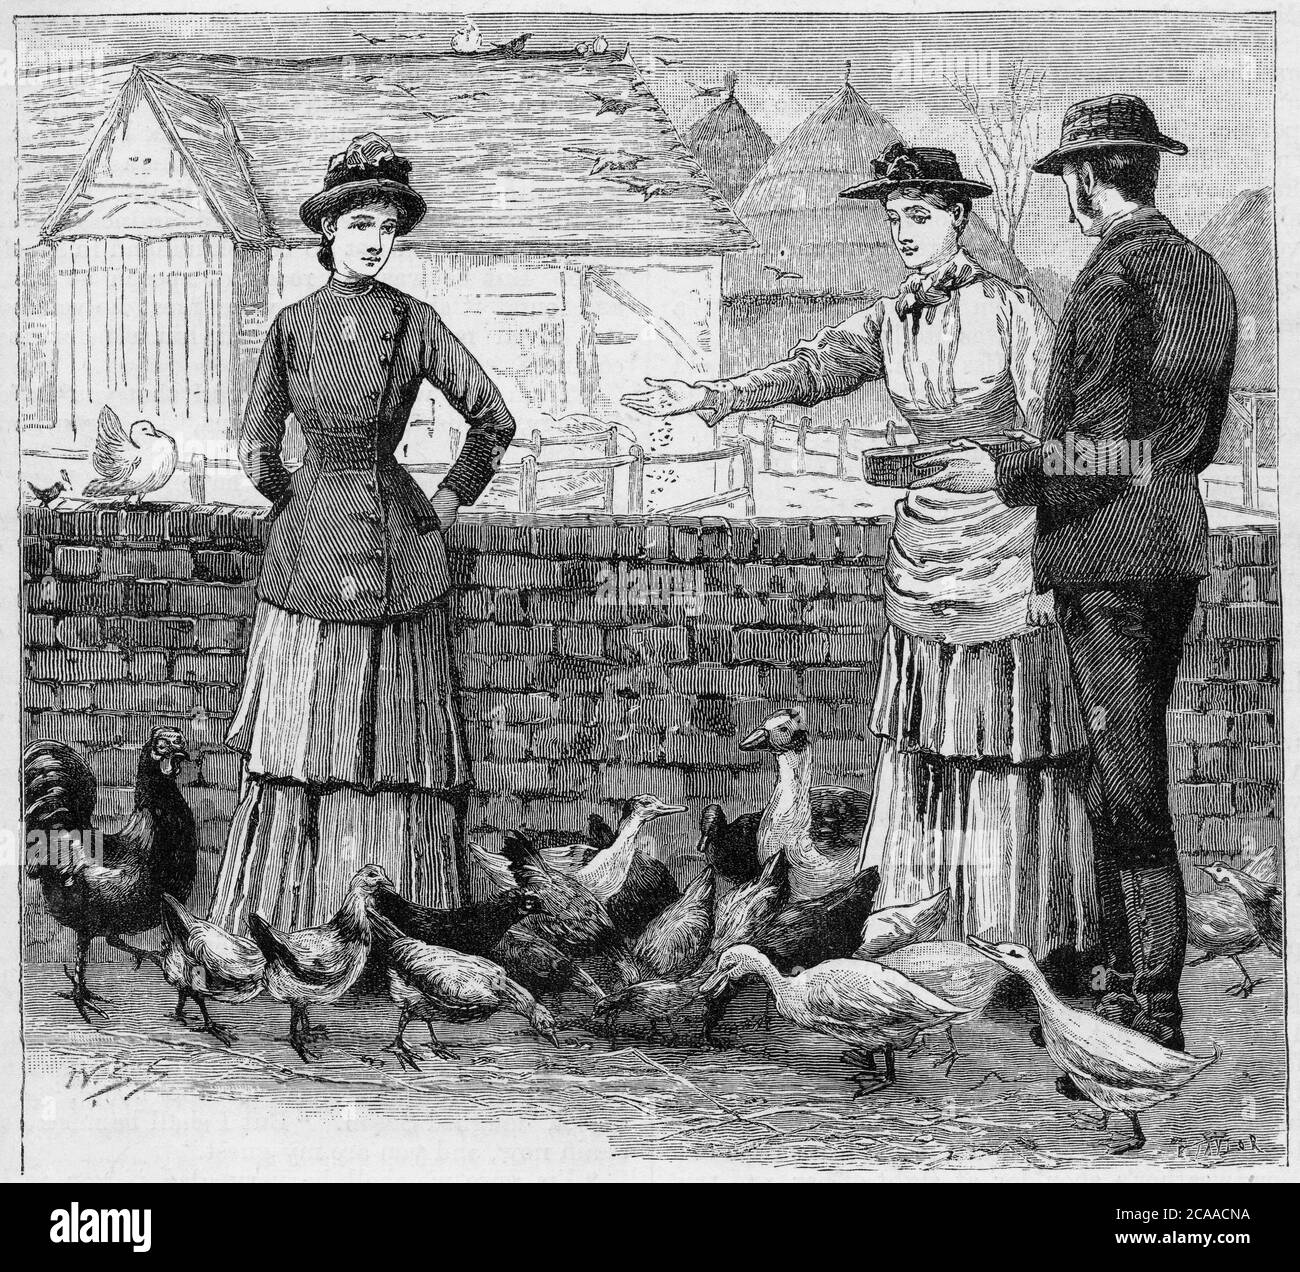 Incisione di una giovane donna che alimenta le anatre in un ambiente rual intorno al 19 ° secolo Foto Stock